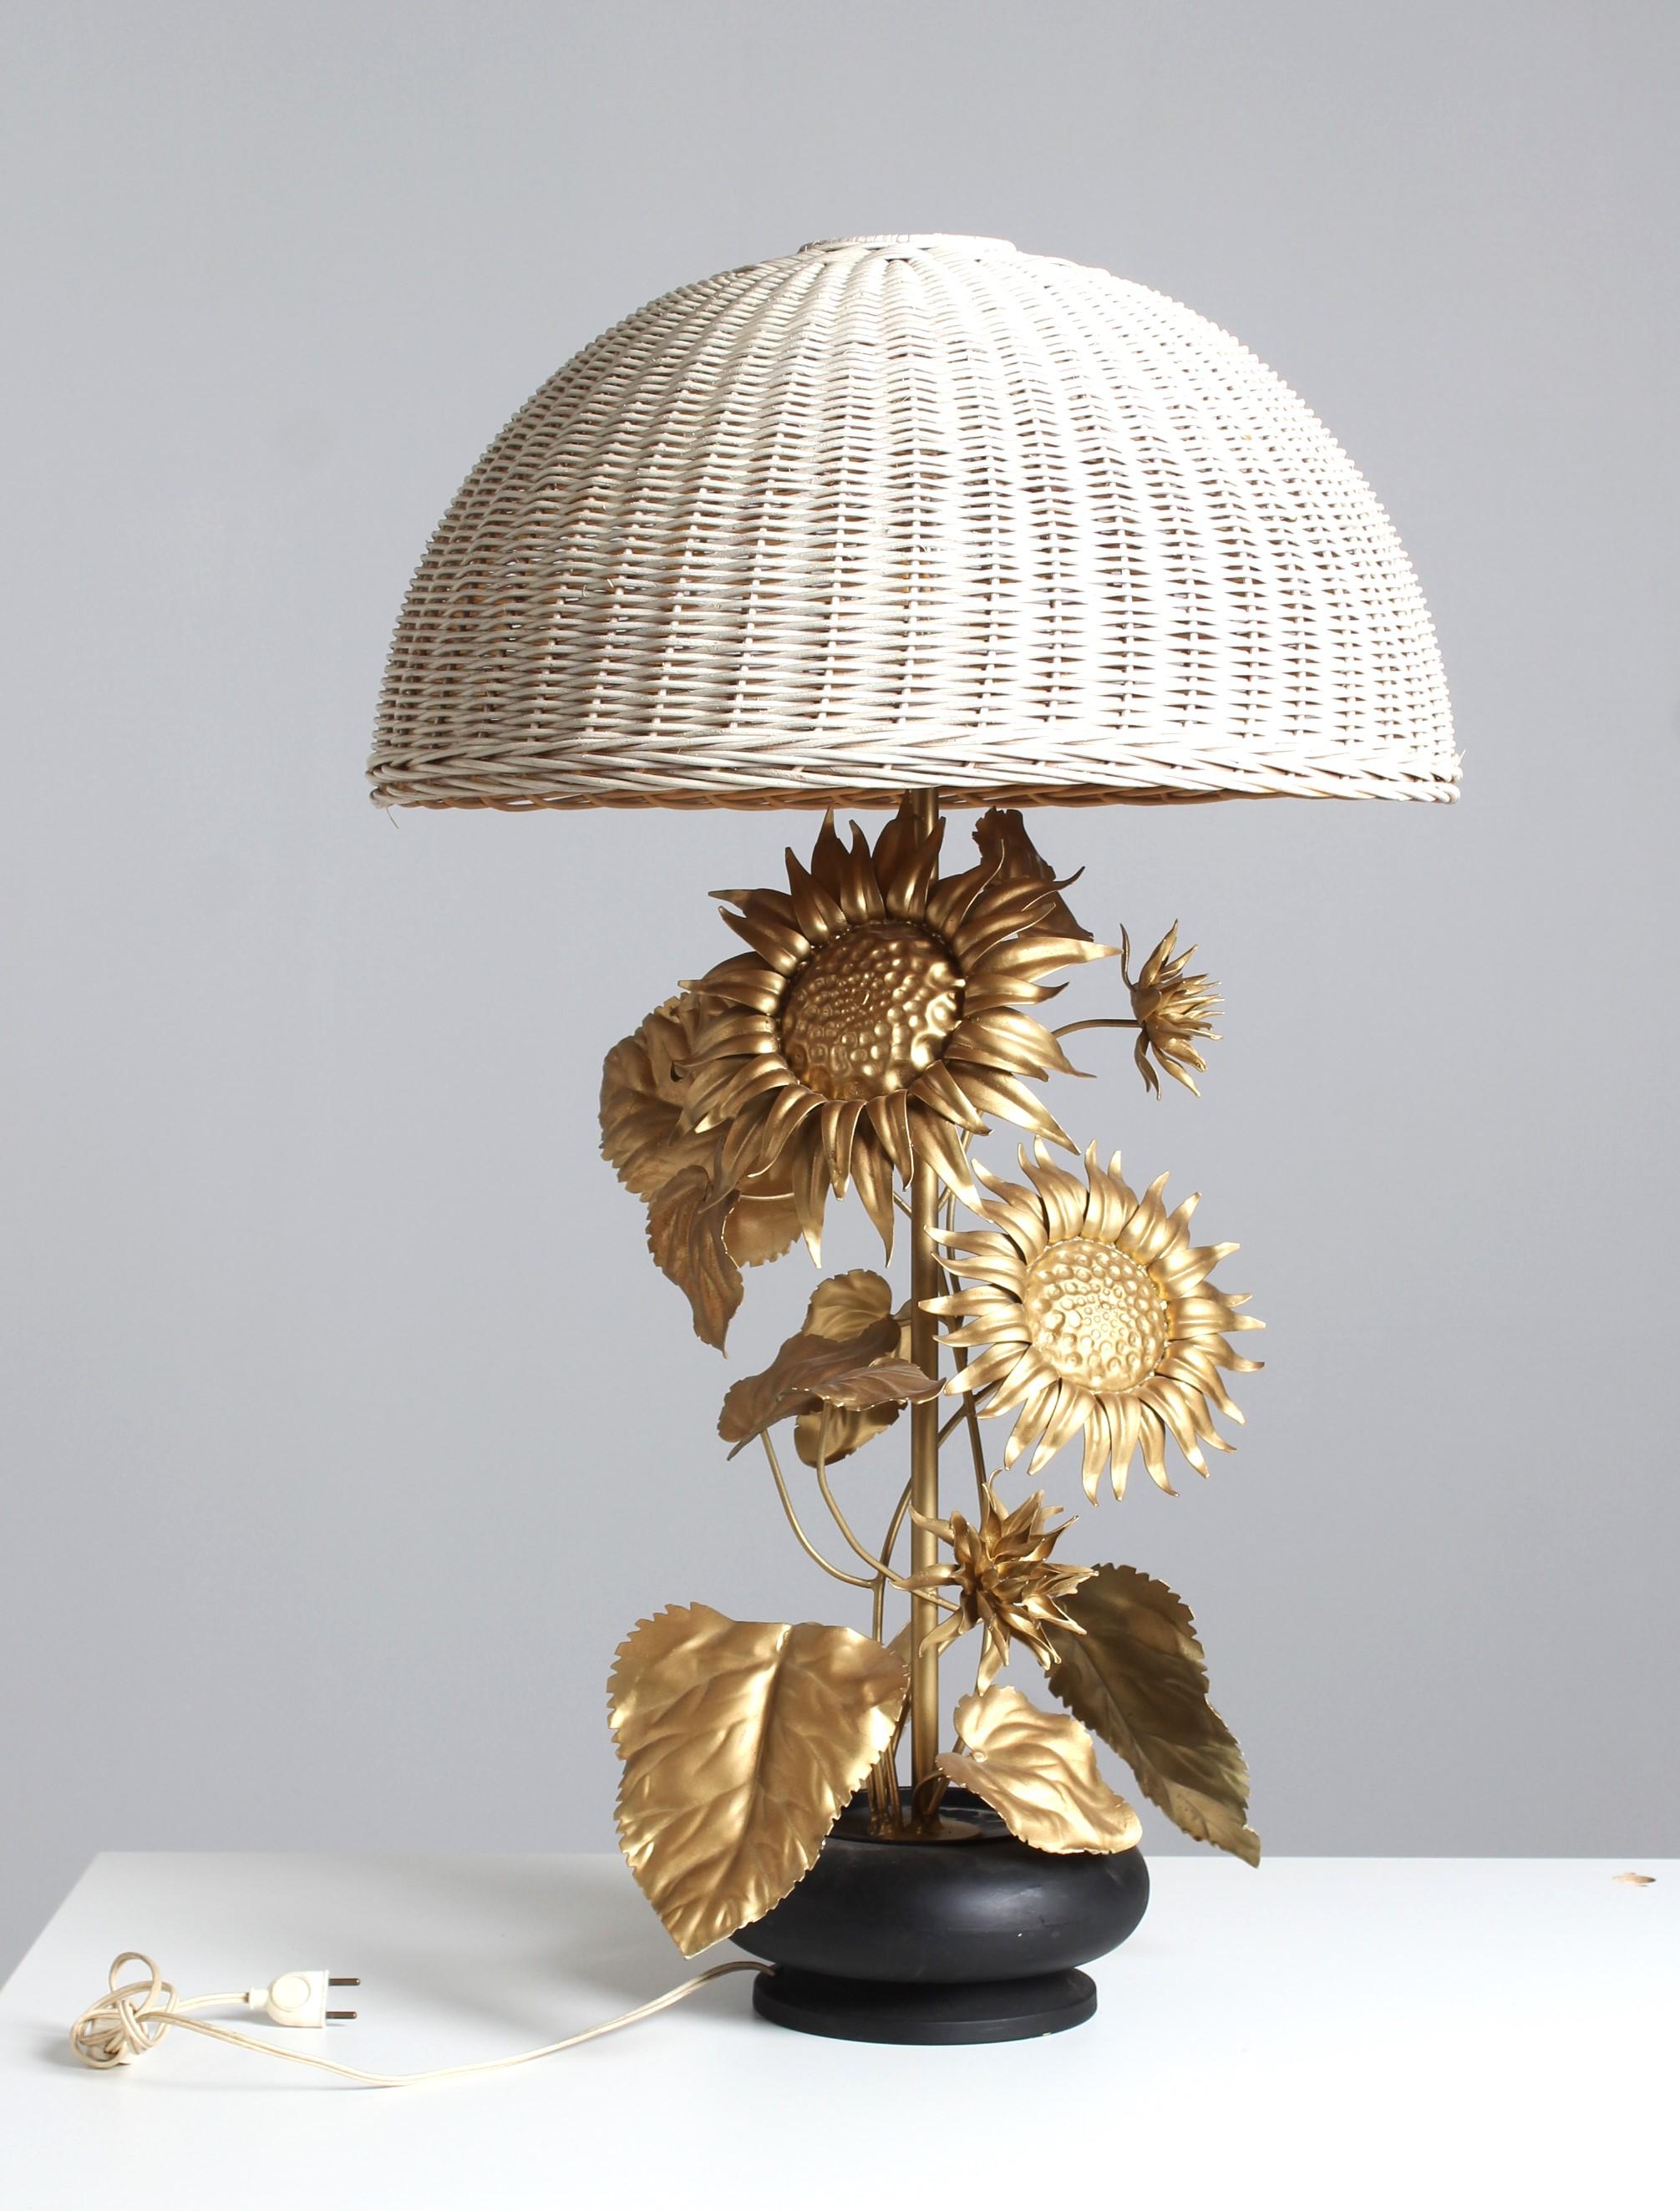 Grande lampe de table en forme de tournesol en métal peint en or avec des fleurs et des feuilles détaillées.
La plante sort d'un pot de fleurs et est surmontée d'un abat-jour en rotin.

Hauteur 95 cm
Diamètre de l'abat-jour : 57